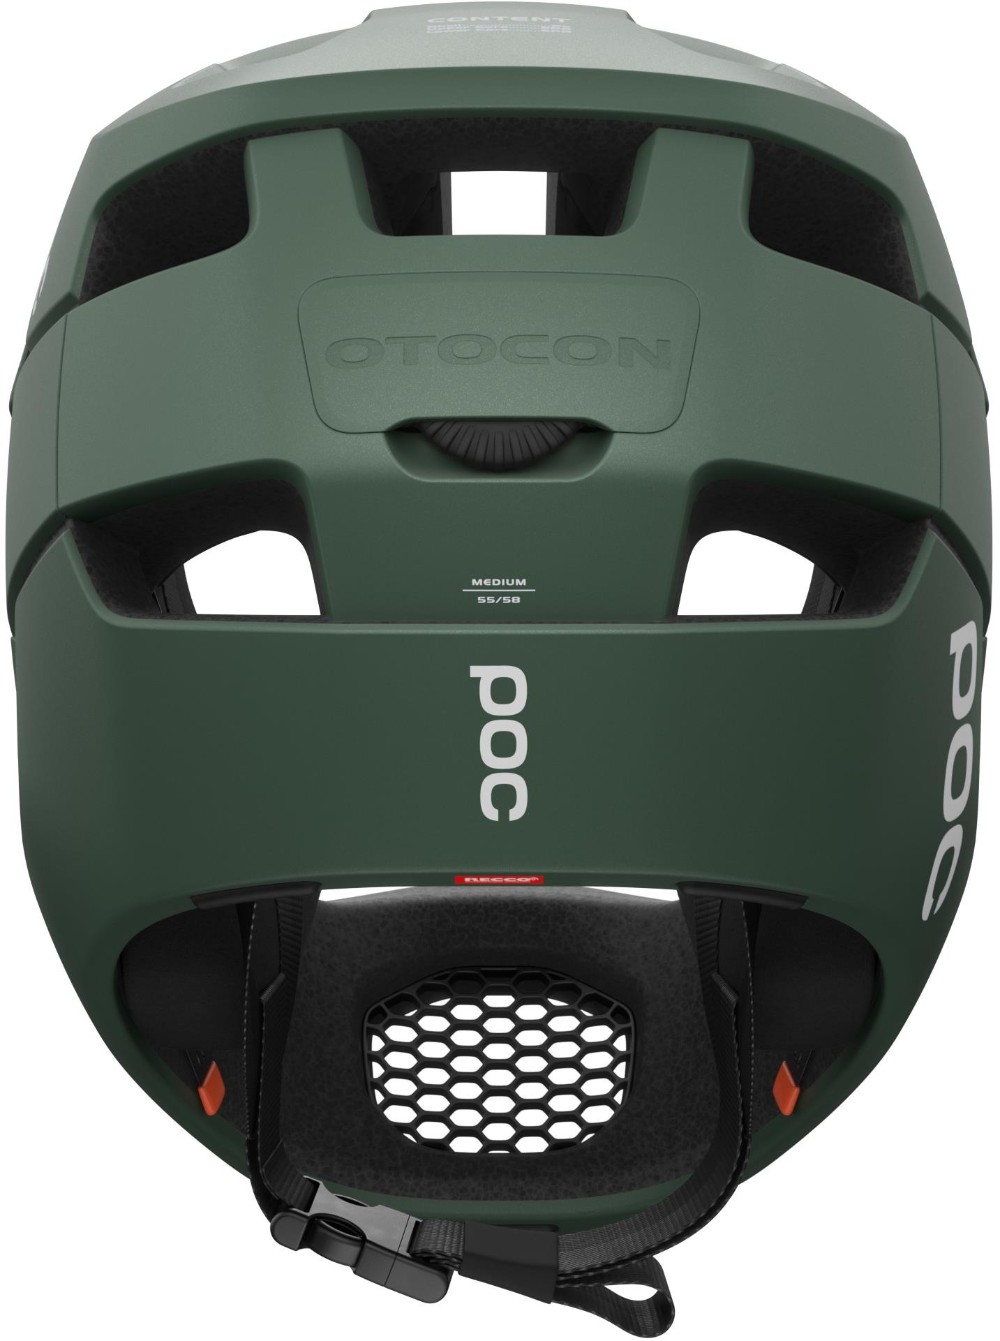 Otocon Full Face MTB Helmet image 1